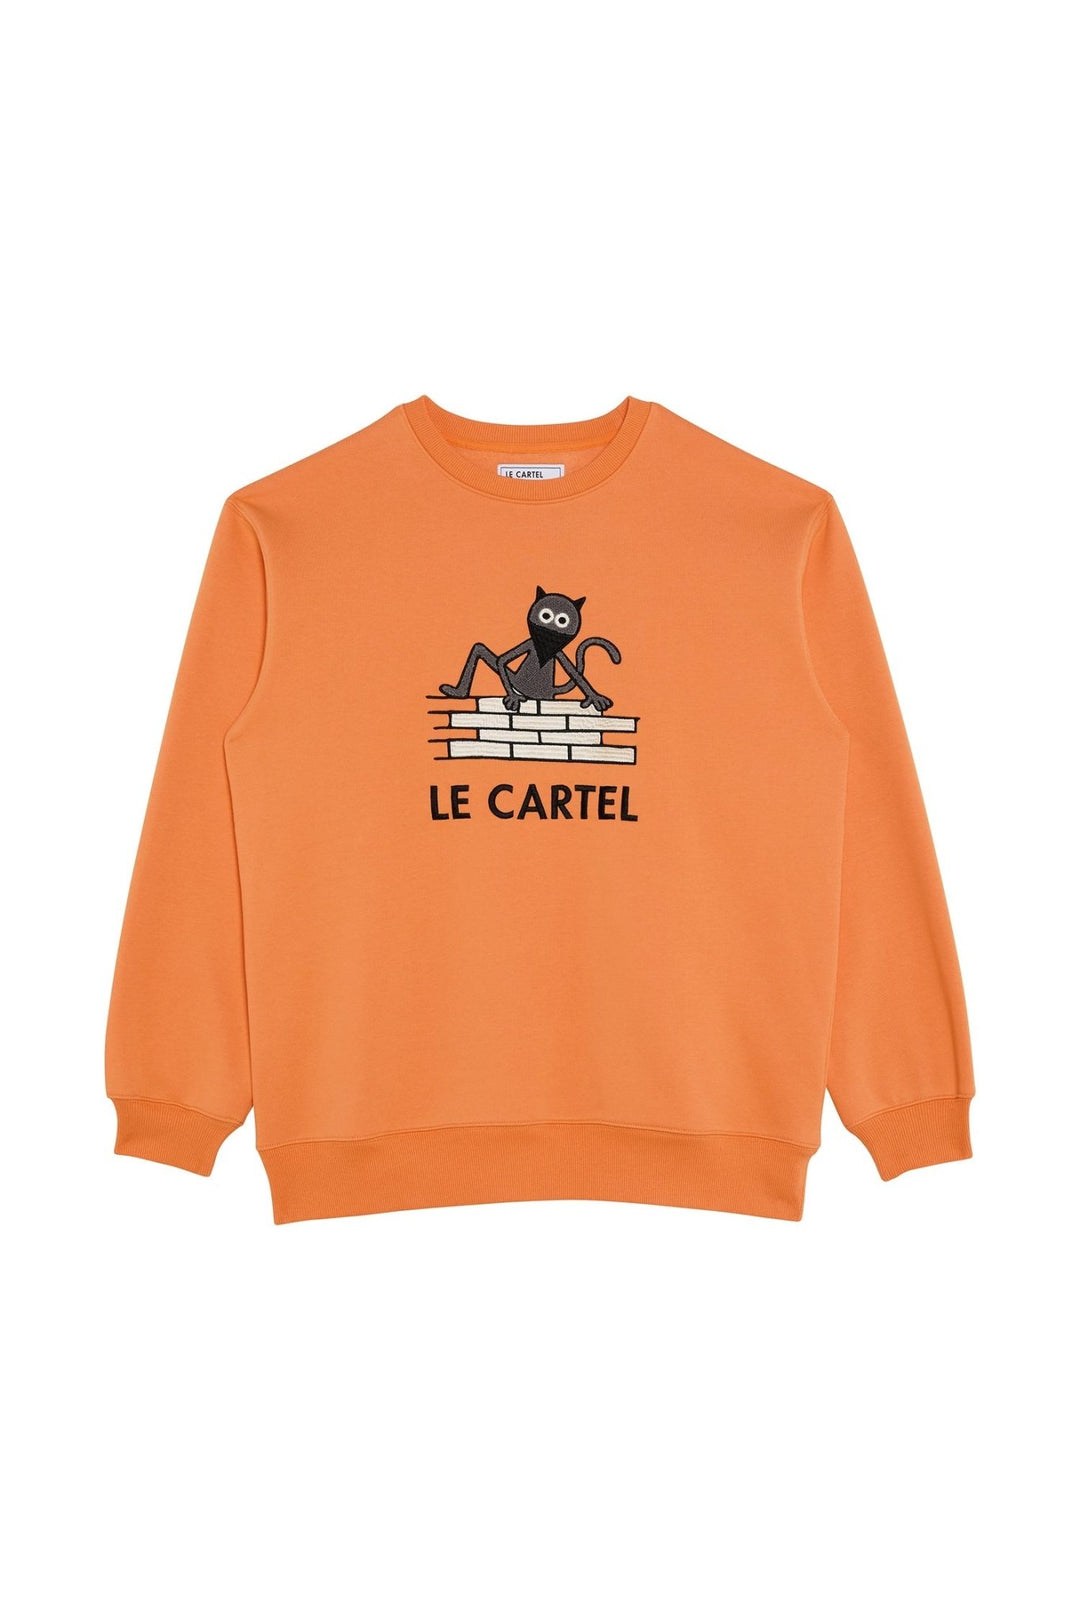 CHATCRIPANT・Crewneck unisexe・Orange - Le Cartel